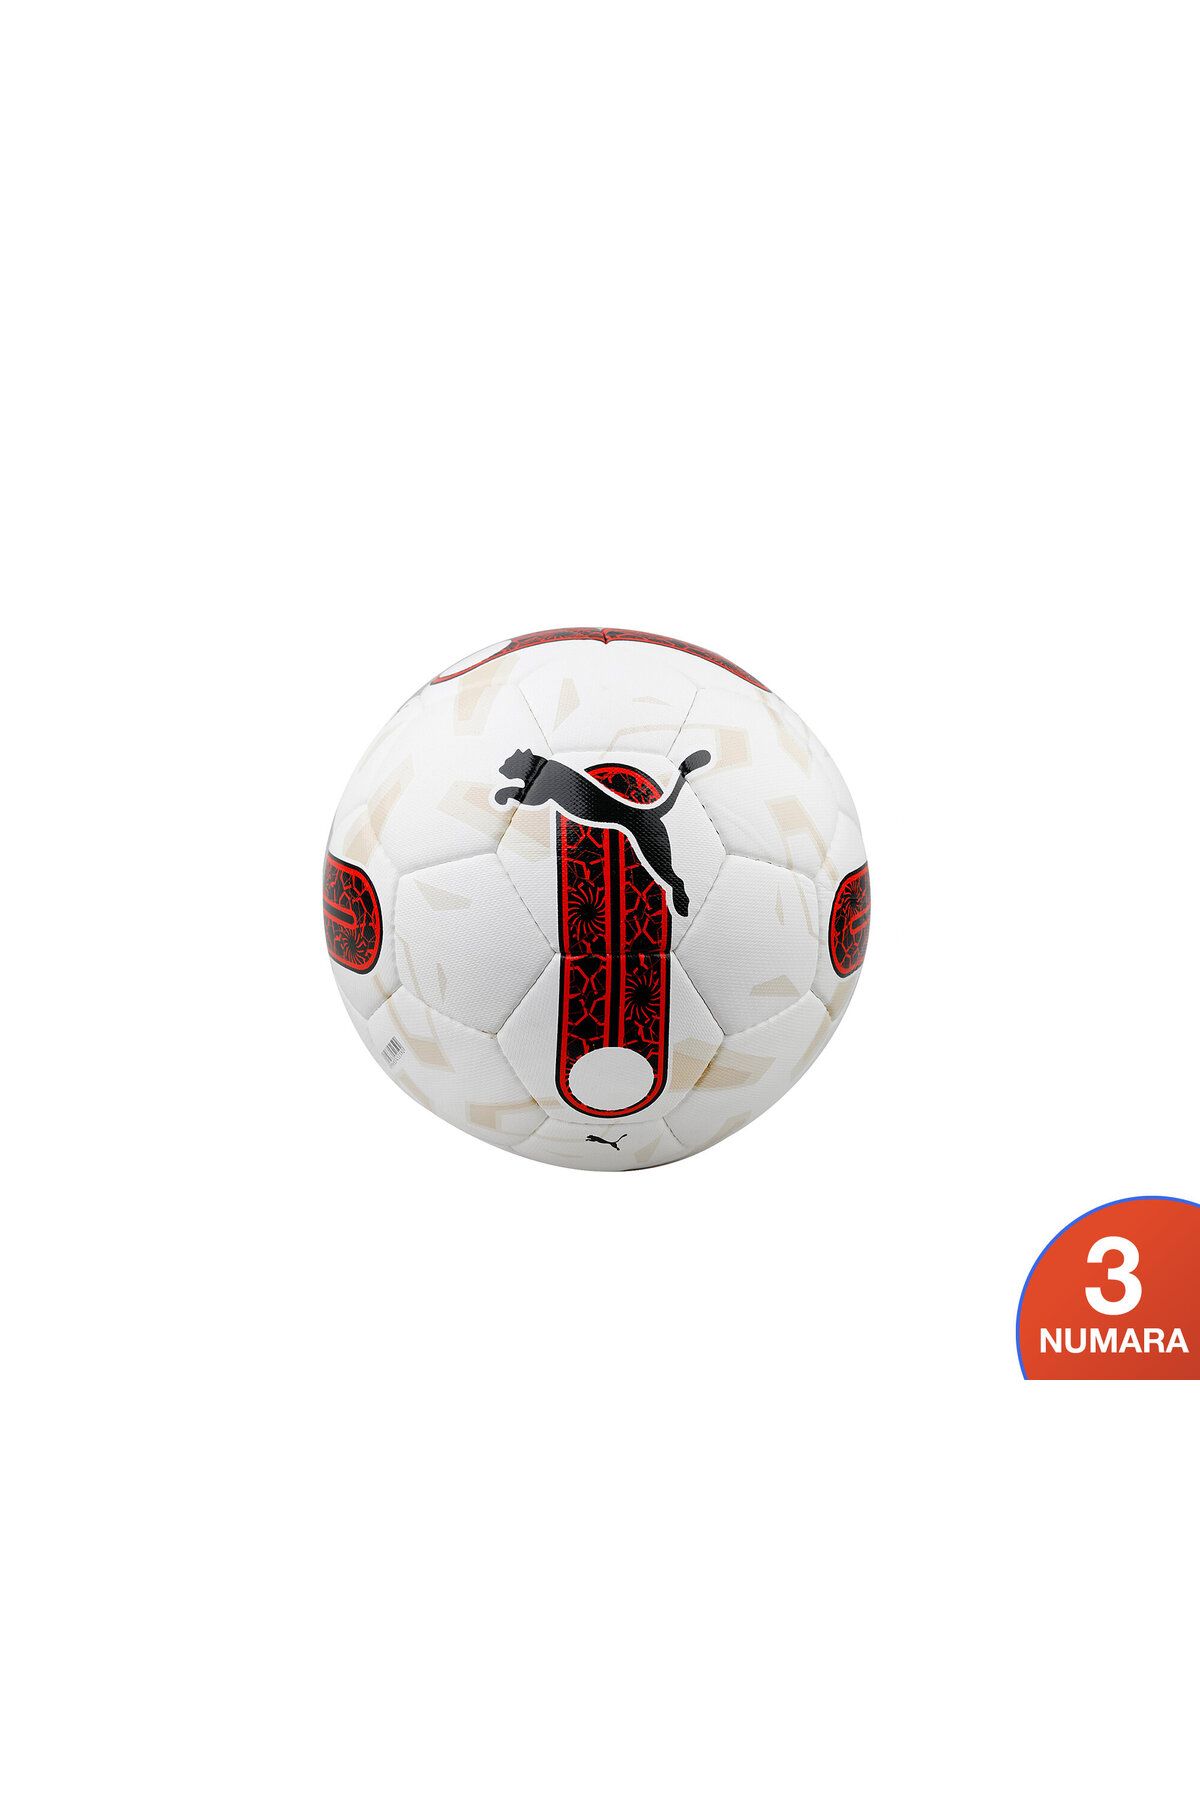 Puma Orbita Süper Lig 6 Hs Futbol Topu 08419801-3 Beyaz